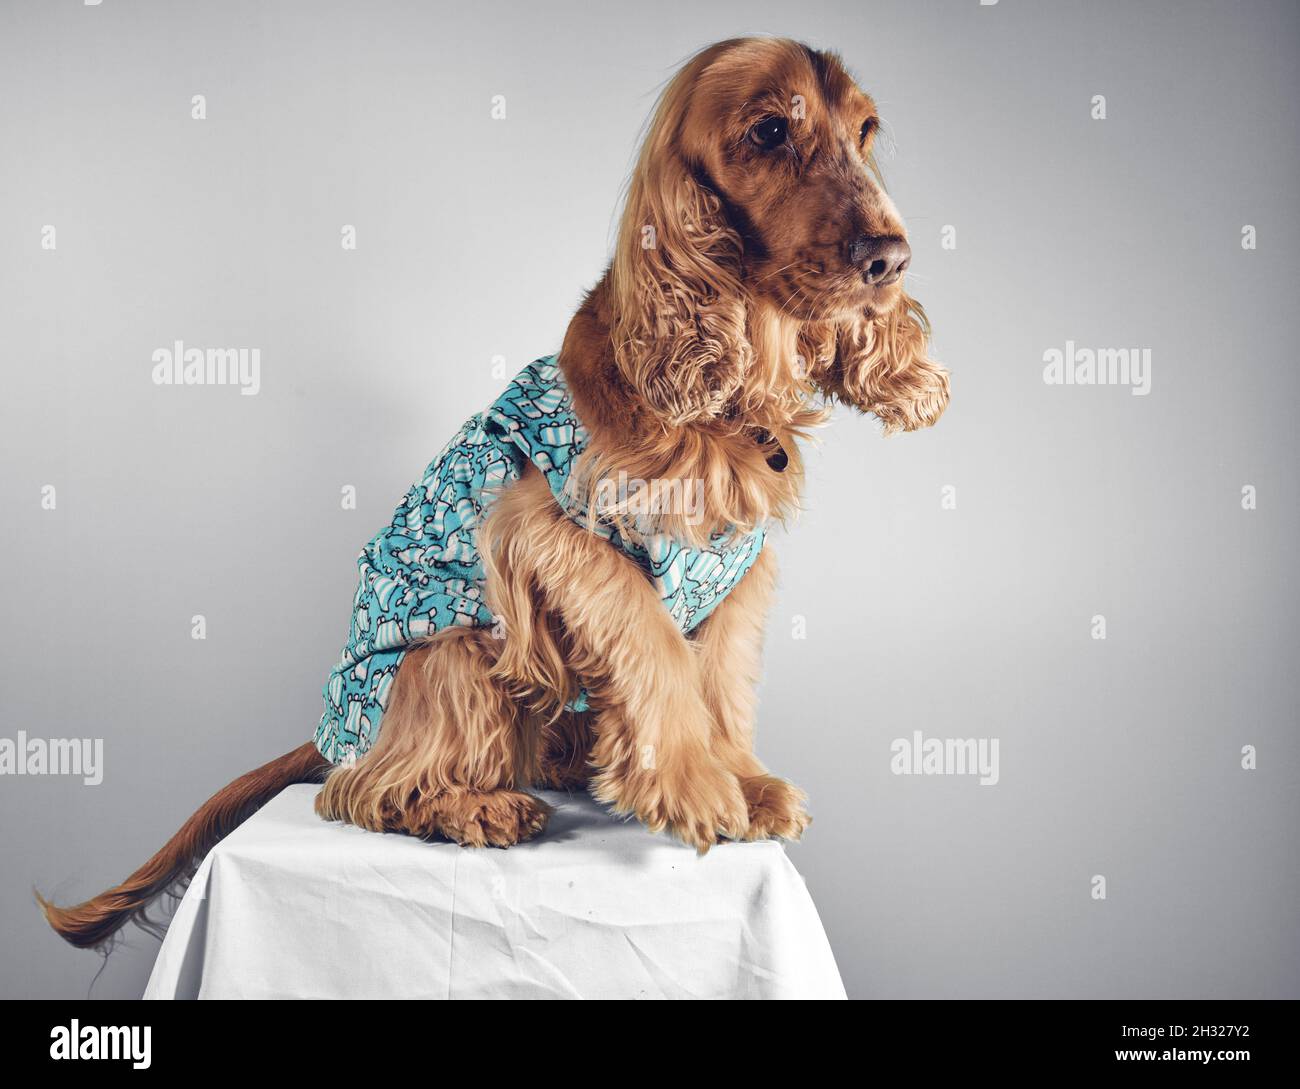 Perro Cocker spaniel con ropa Fotografía de stock - Alamy